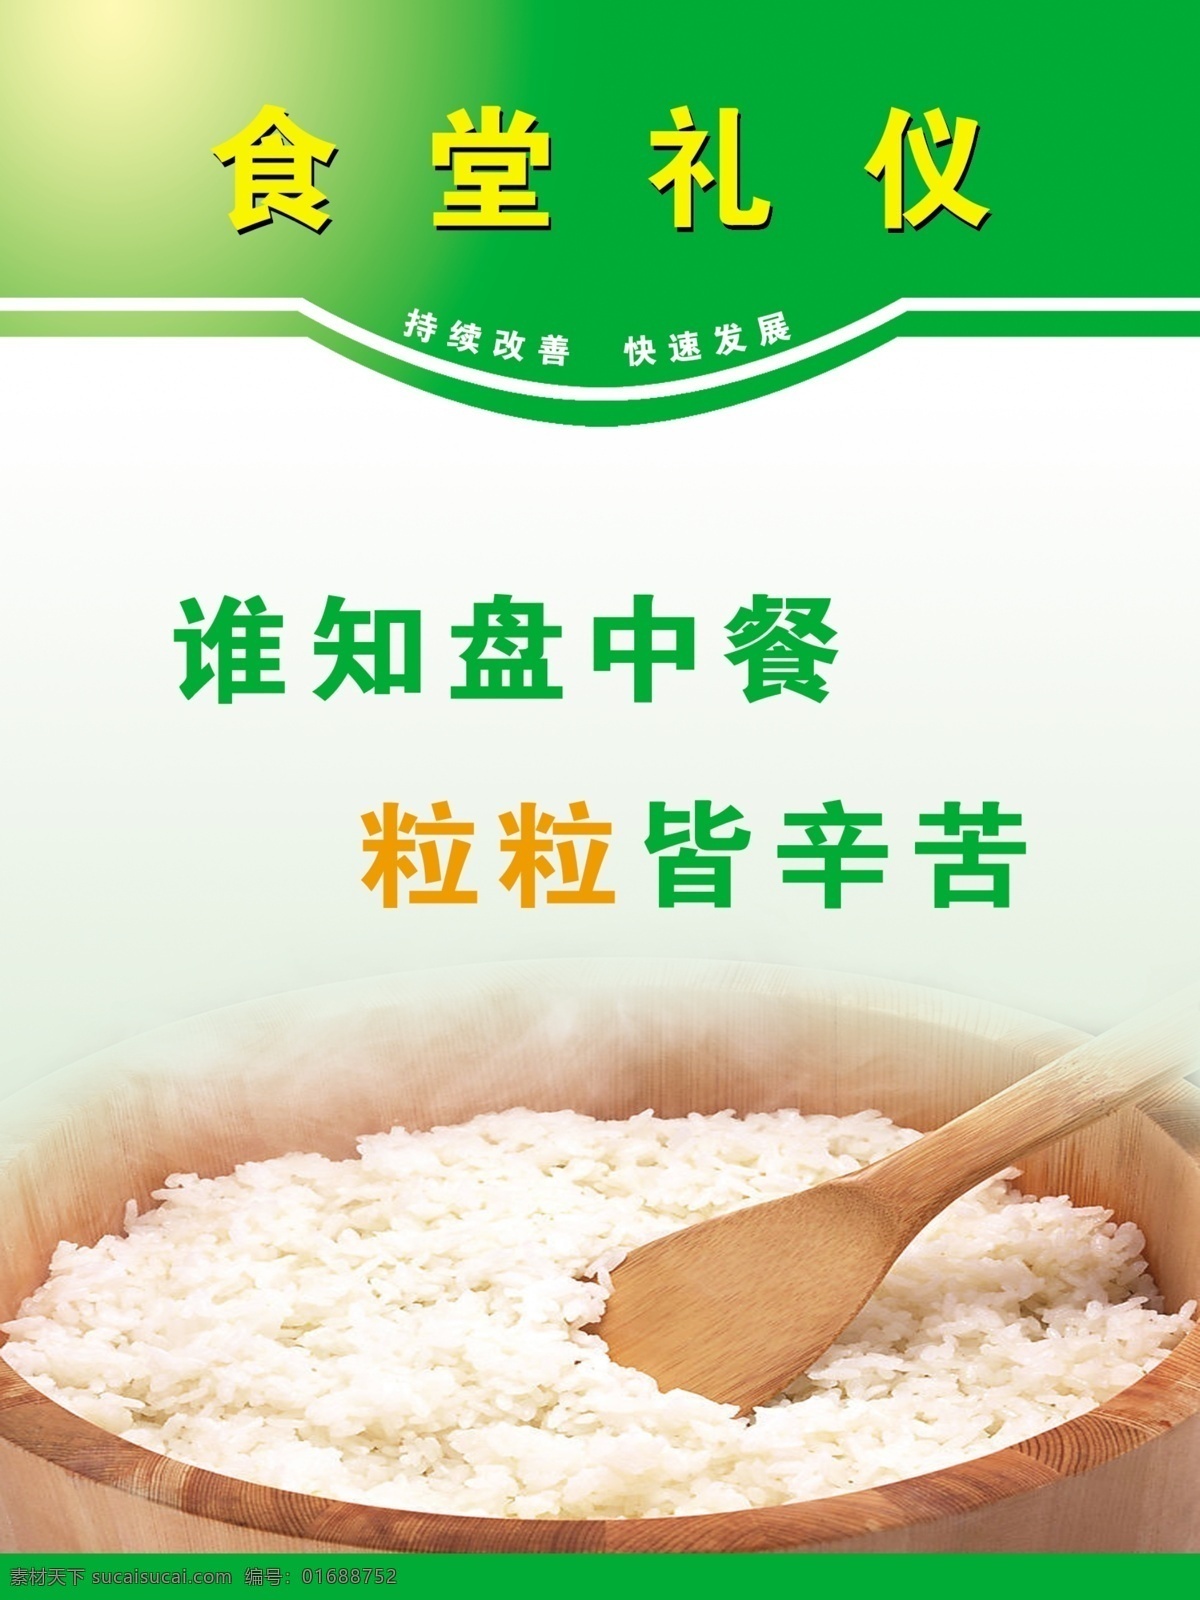 食堂礼仪制度 节约粮食 白米饭 盛饭器具 广告设计模板 源文件